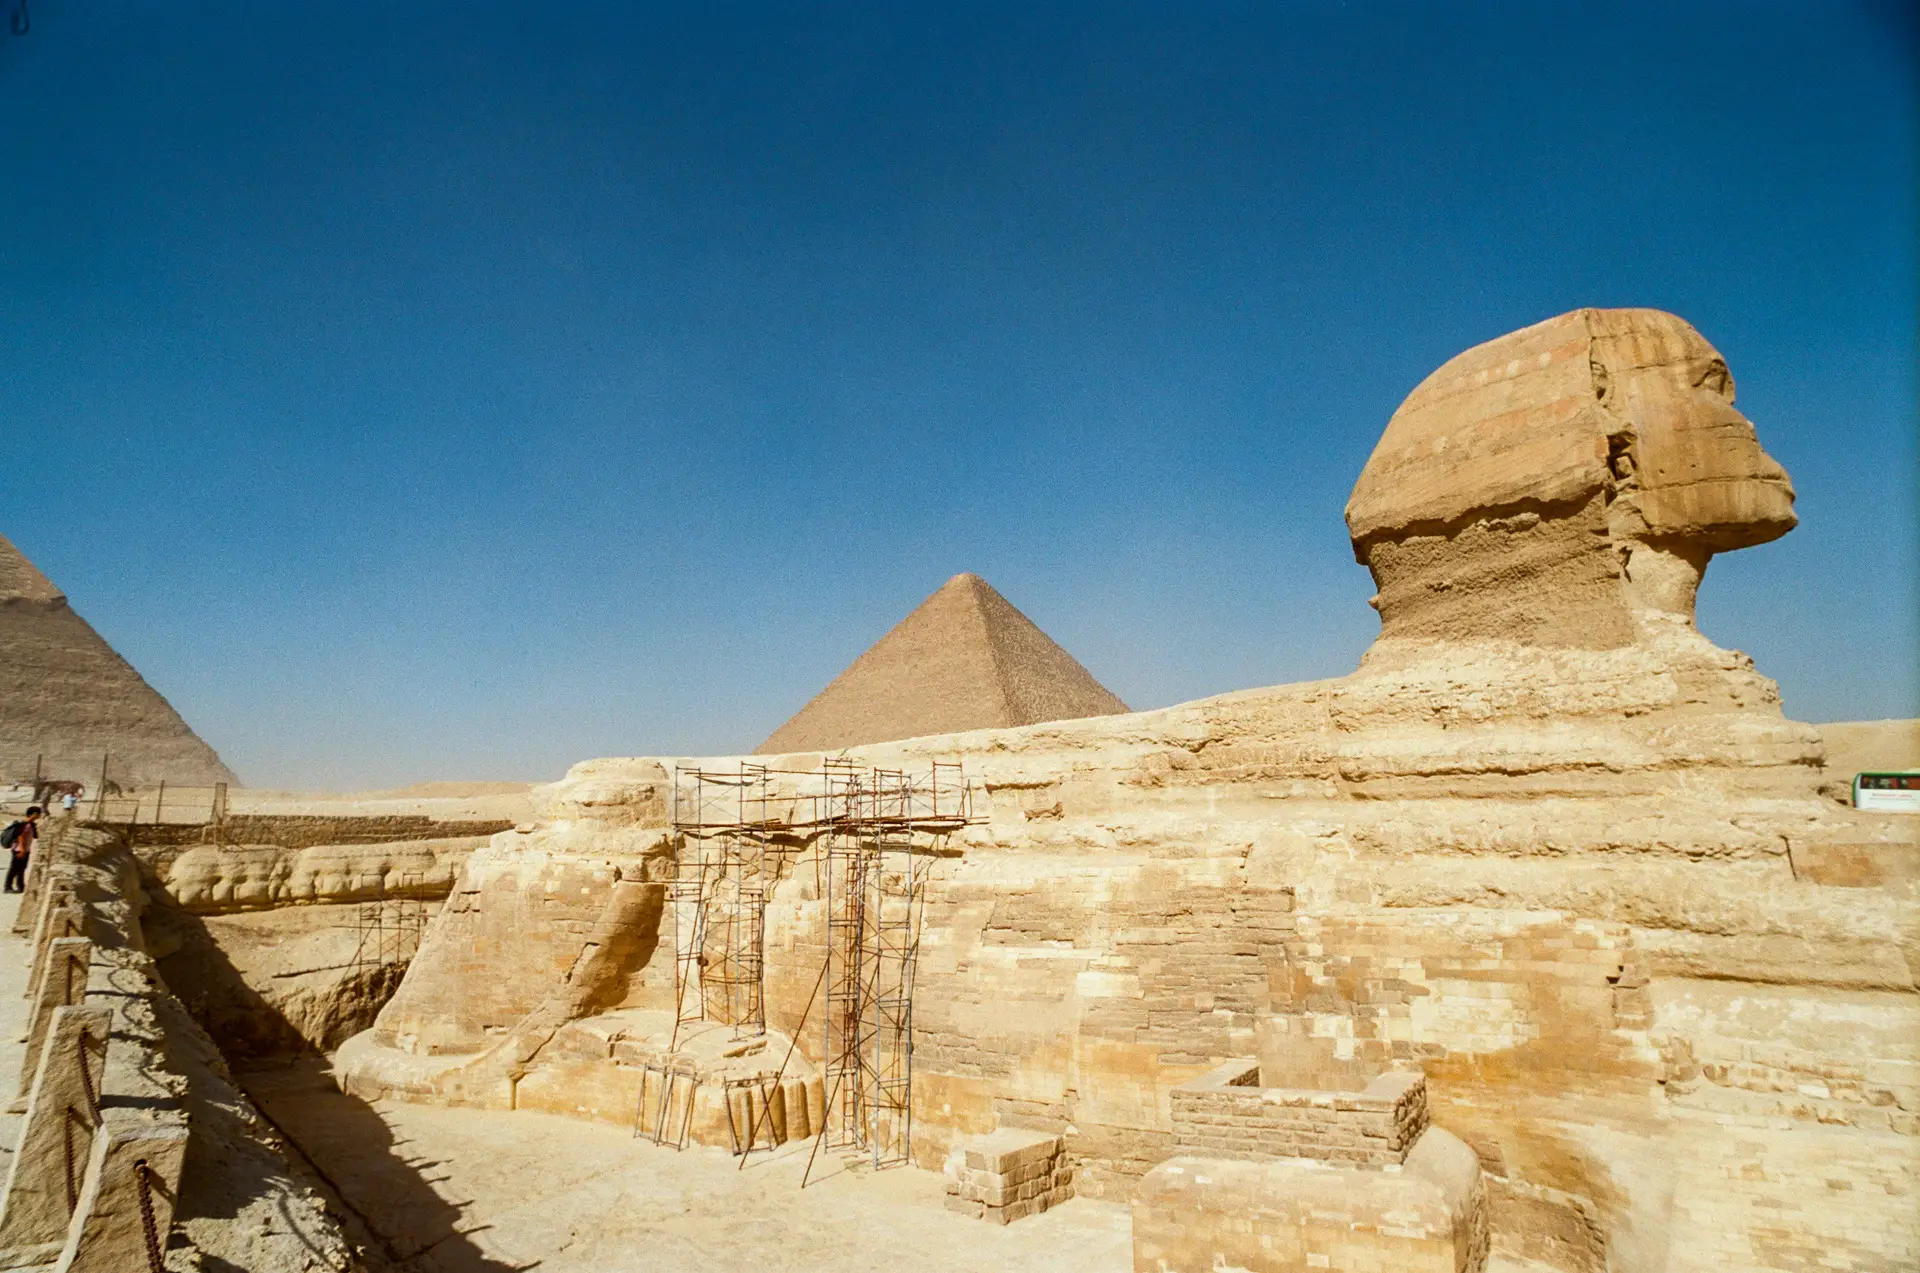 Giza Pyramids and the Sphinx 